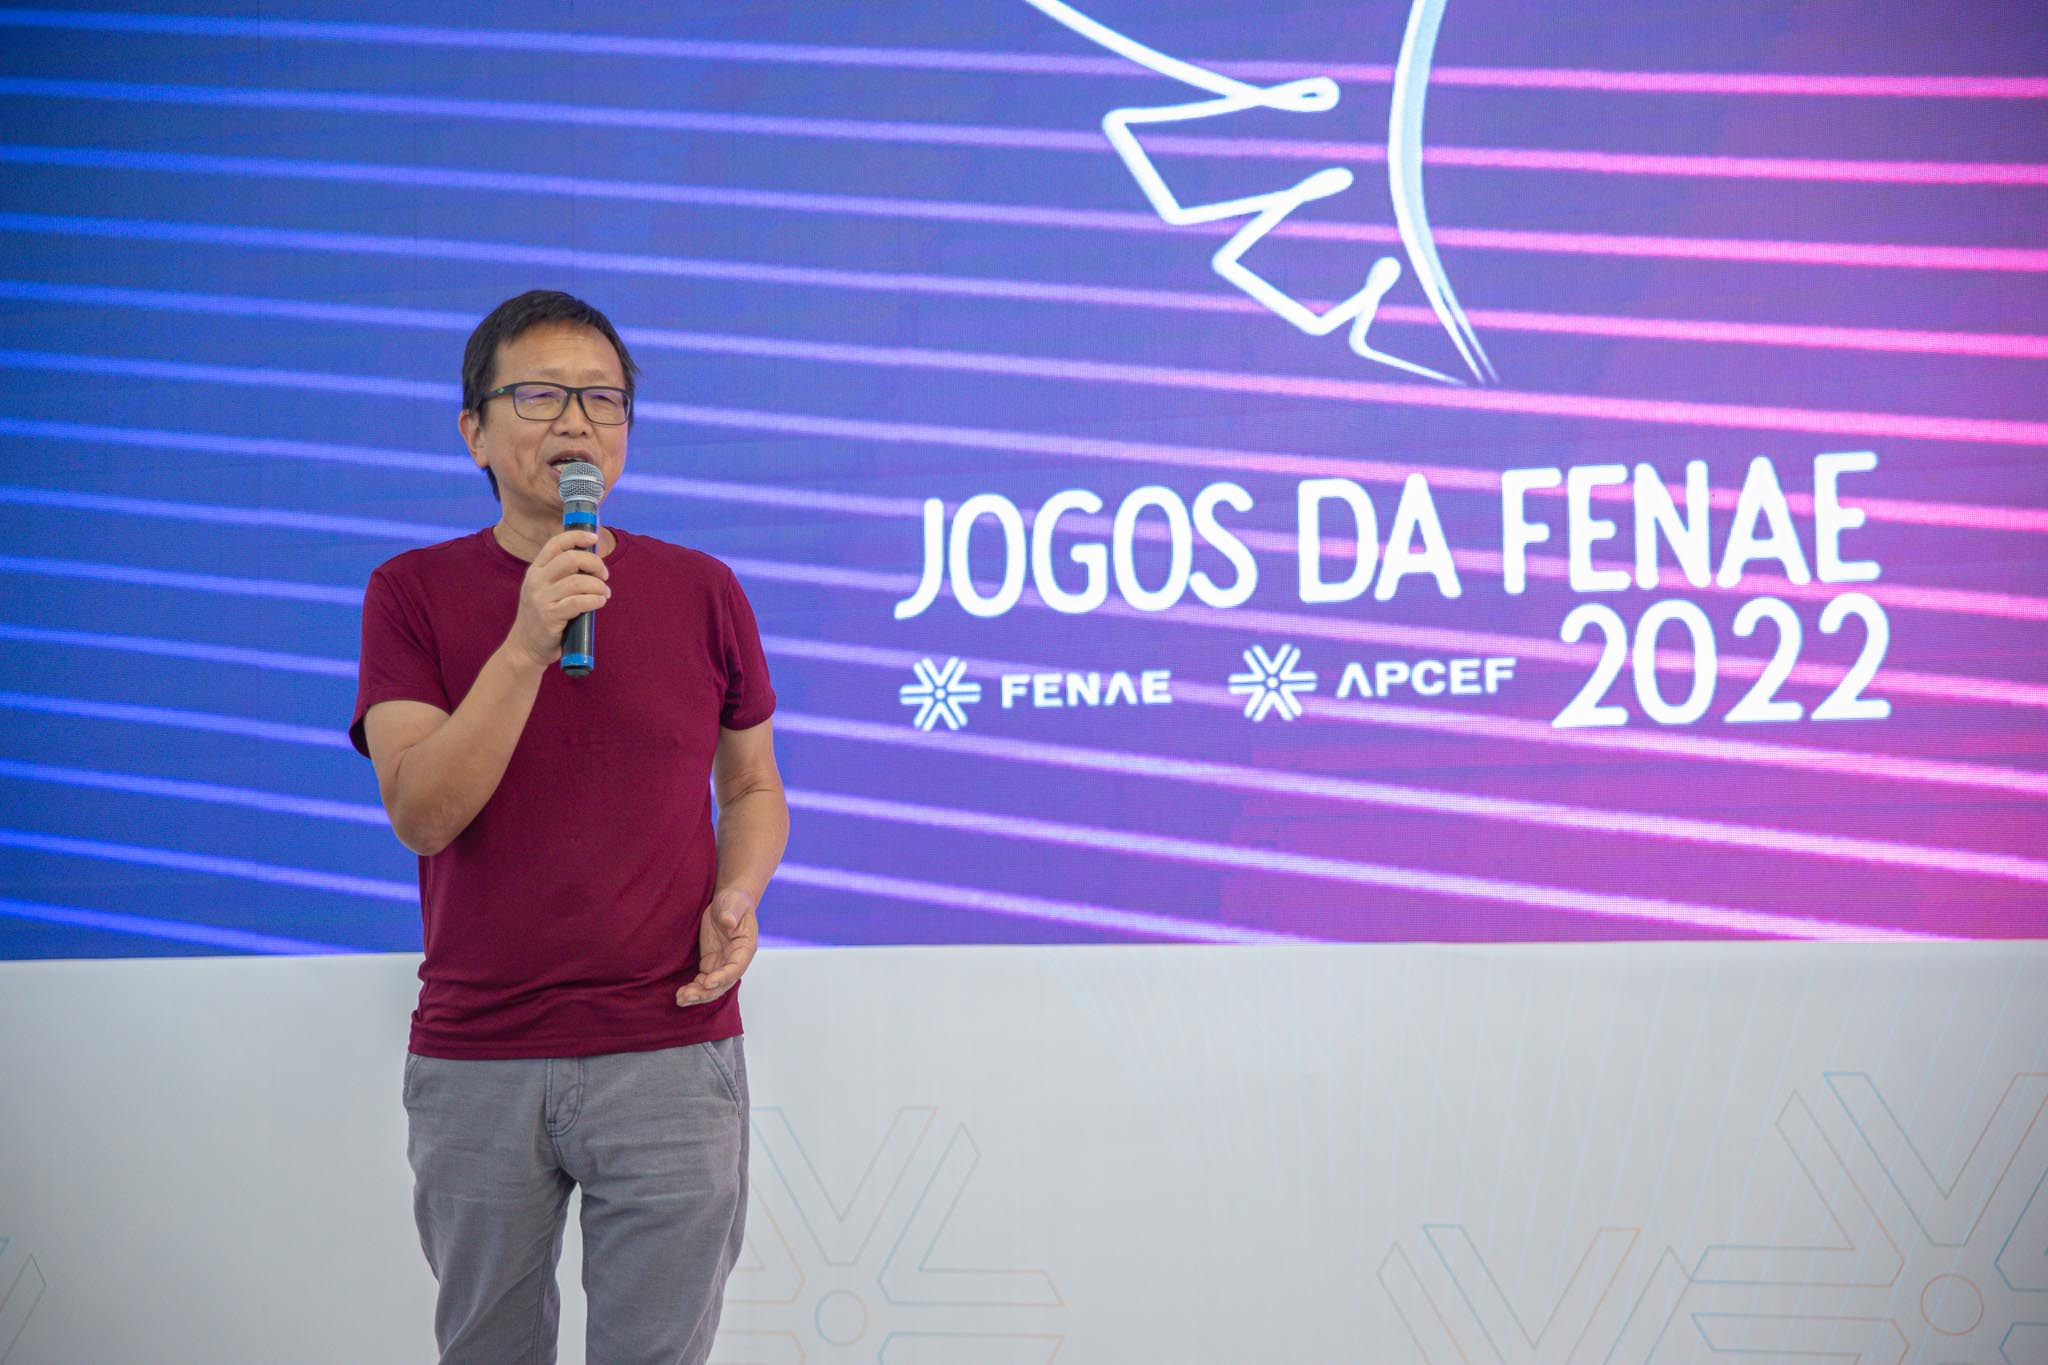 Jogos da Fenae 2022 estão por toda Curitiba